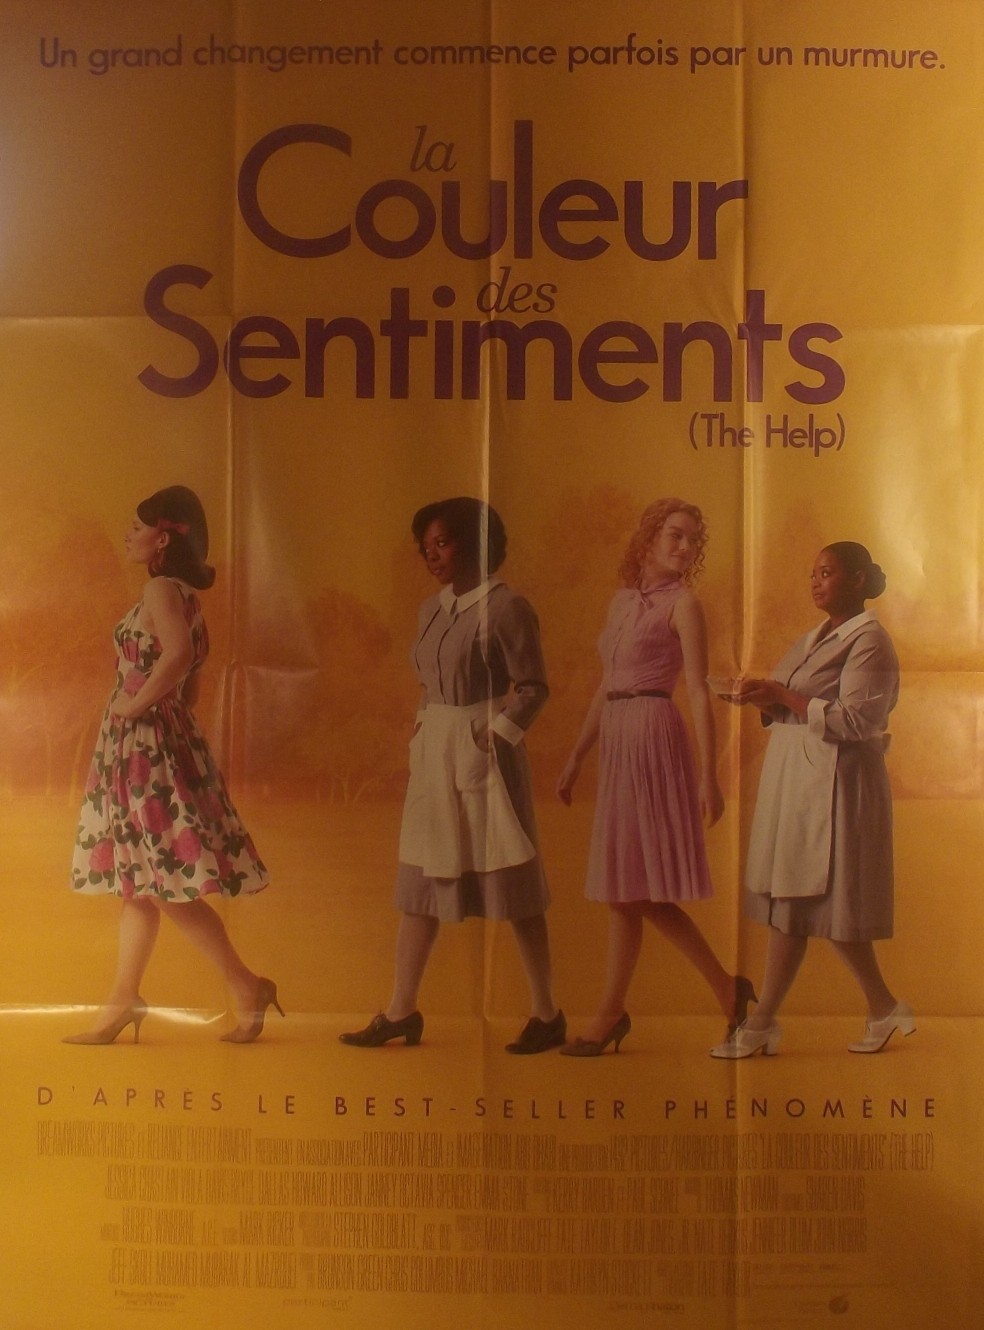 THE HELP - LA COULEUR DES SENTIMENTS - DVD